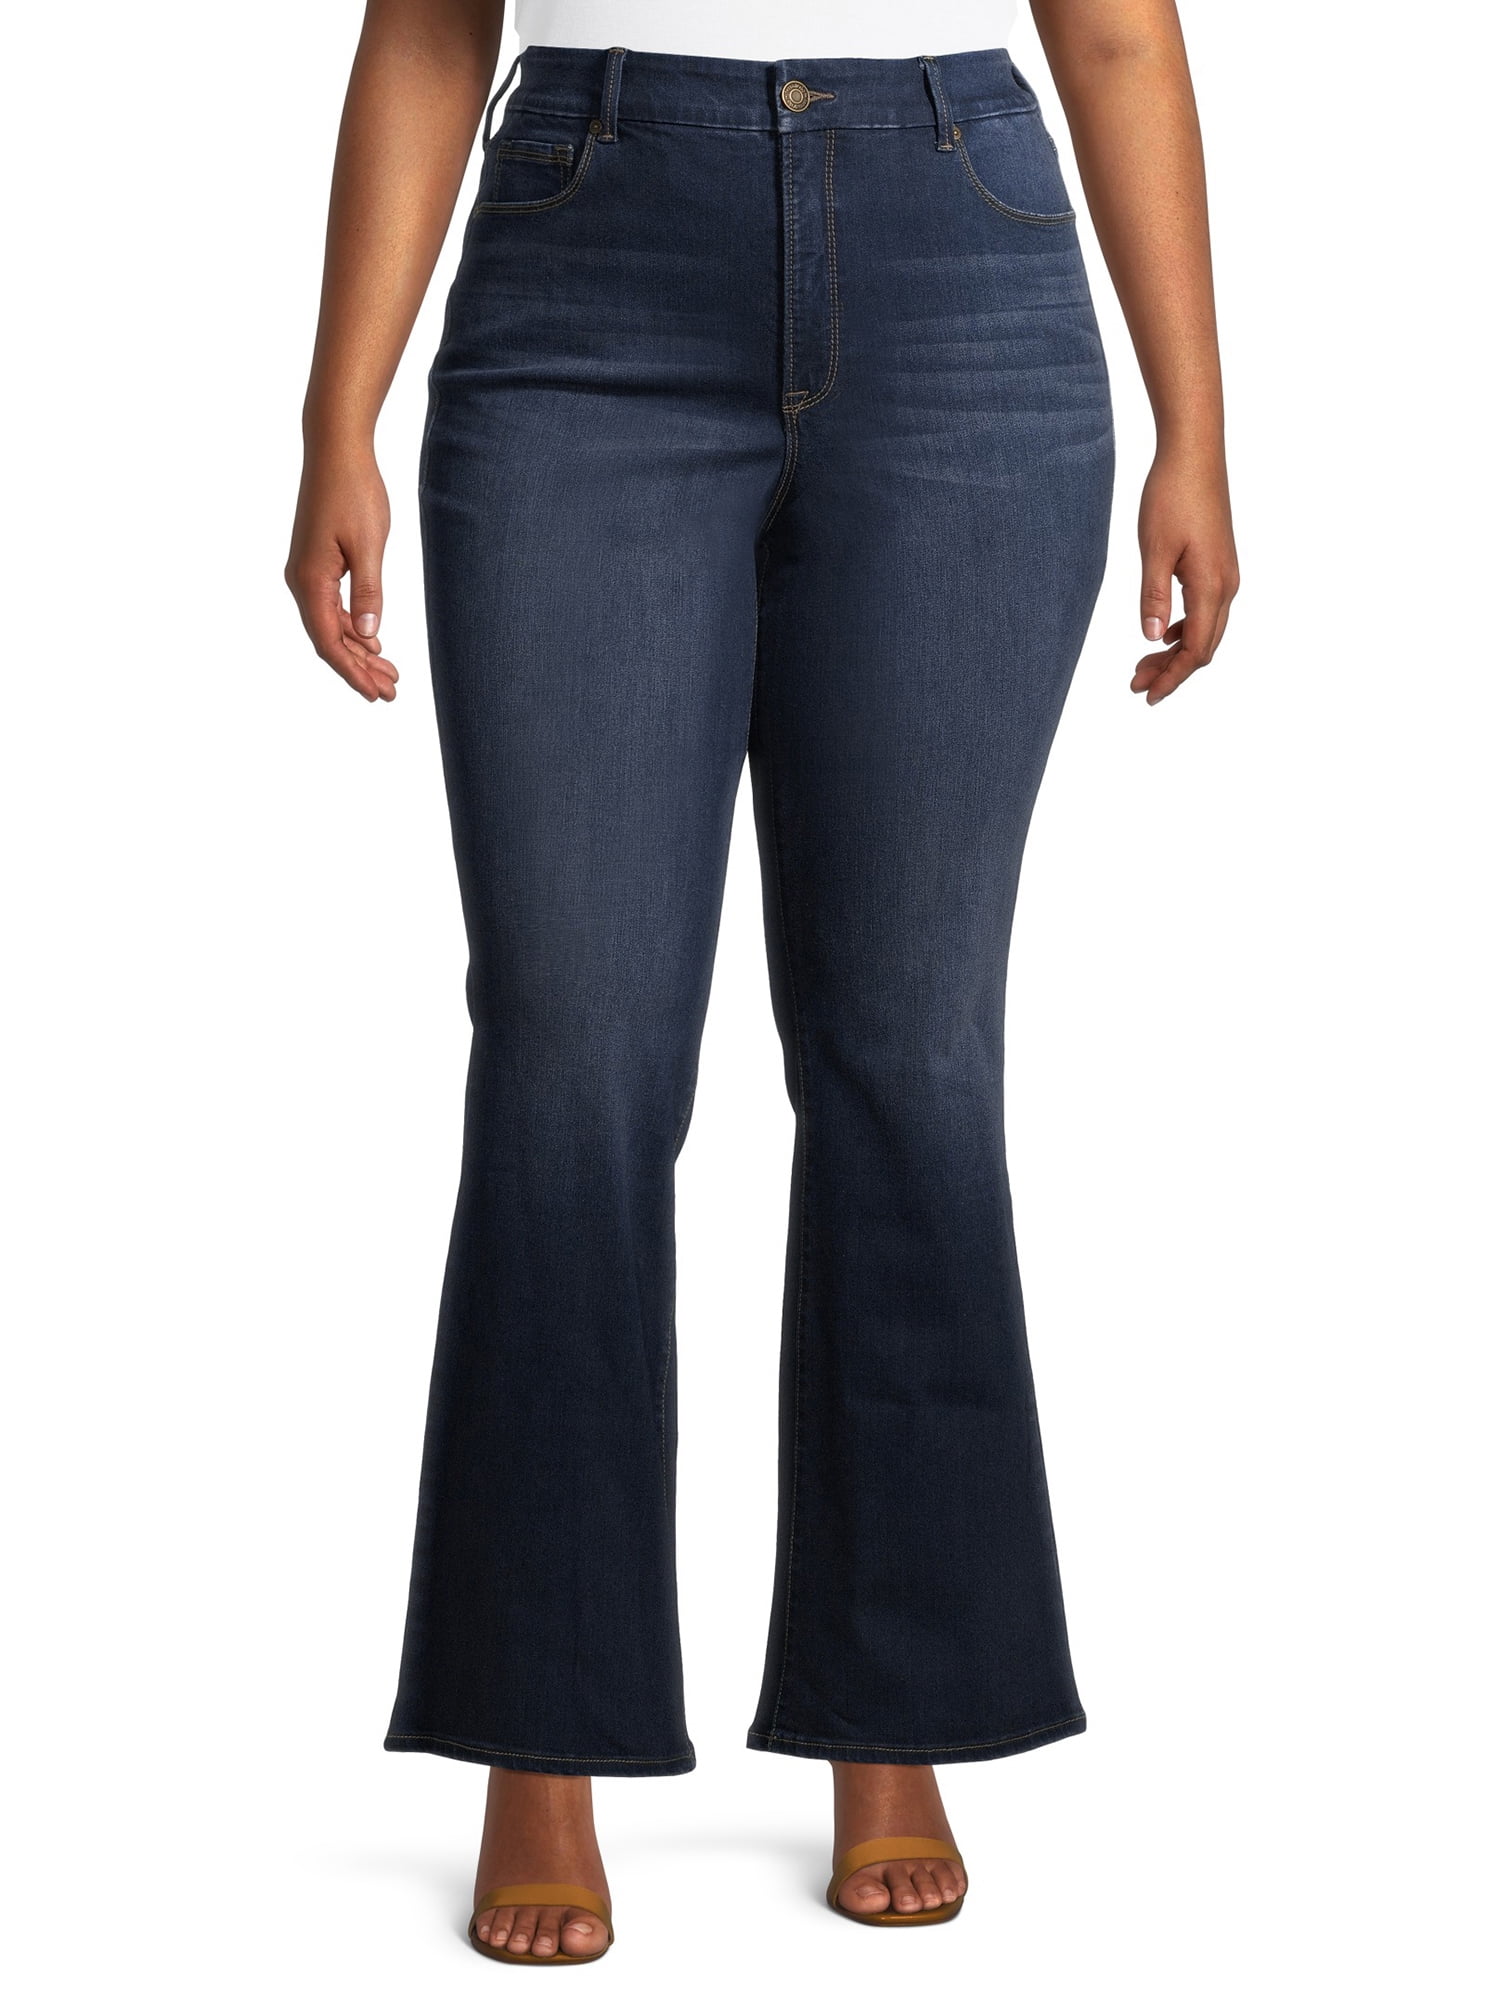 Terra & Sky Women's Plus Size Crop Flare Jeans - Walmart.com